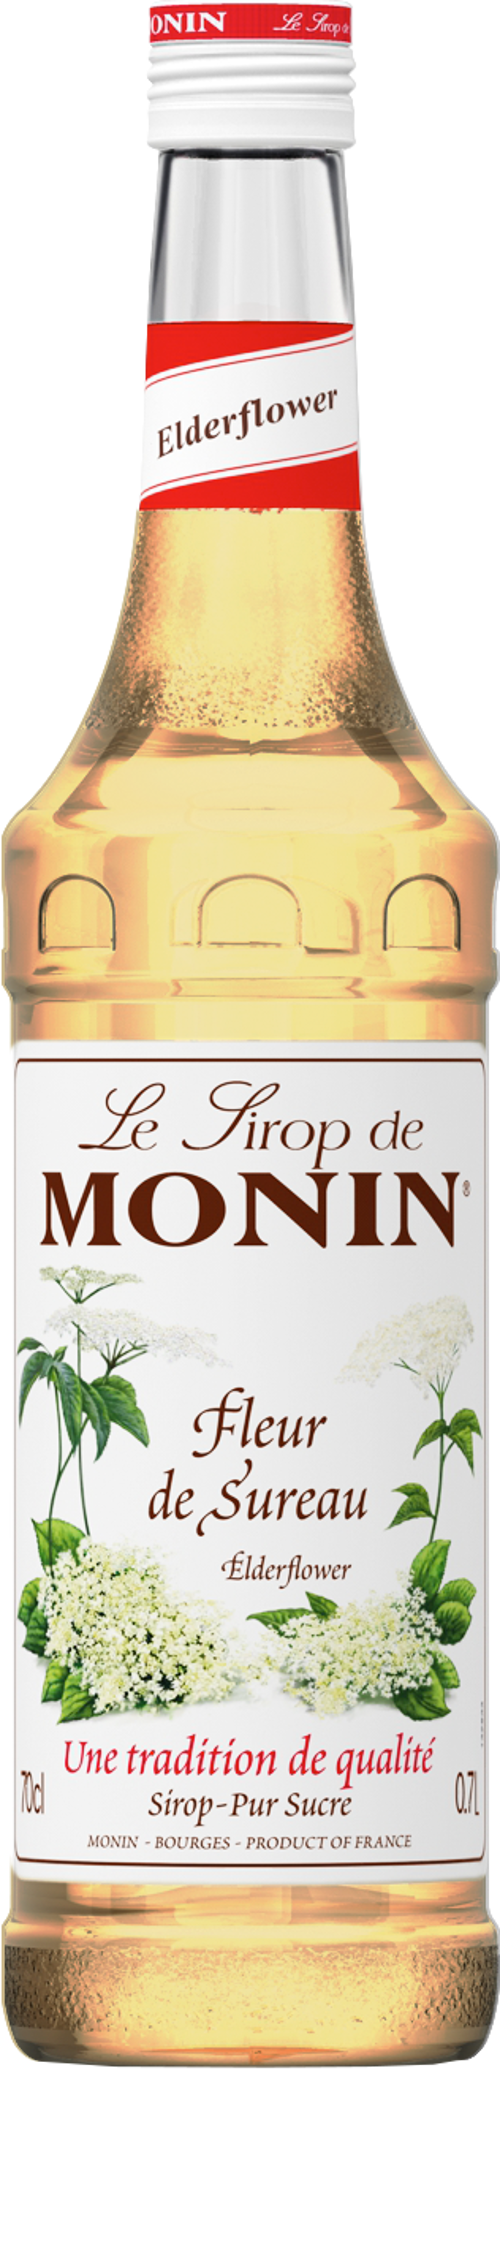 Le Sirop de MONIN Elderflower 0.7l